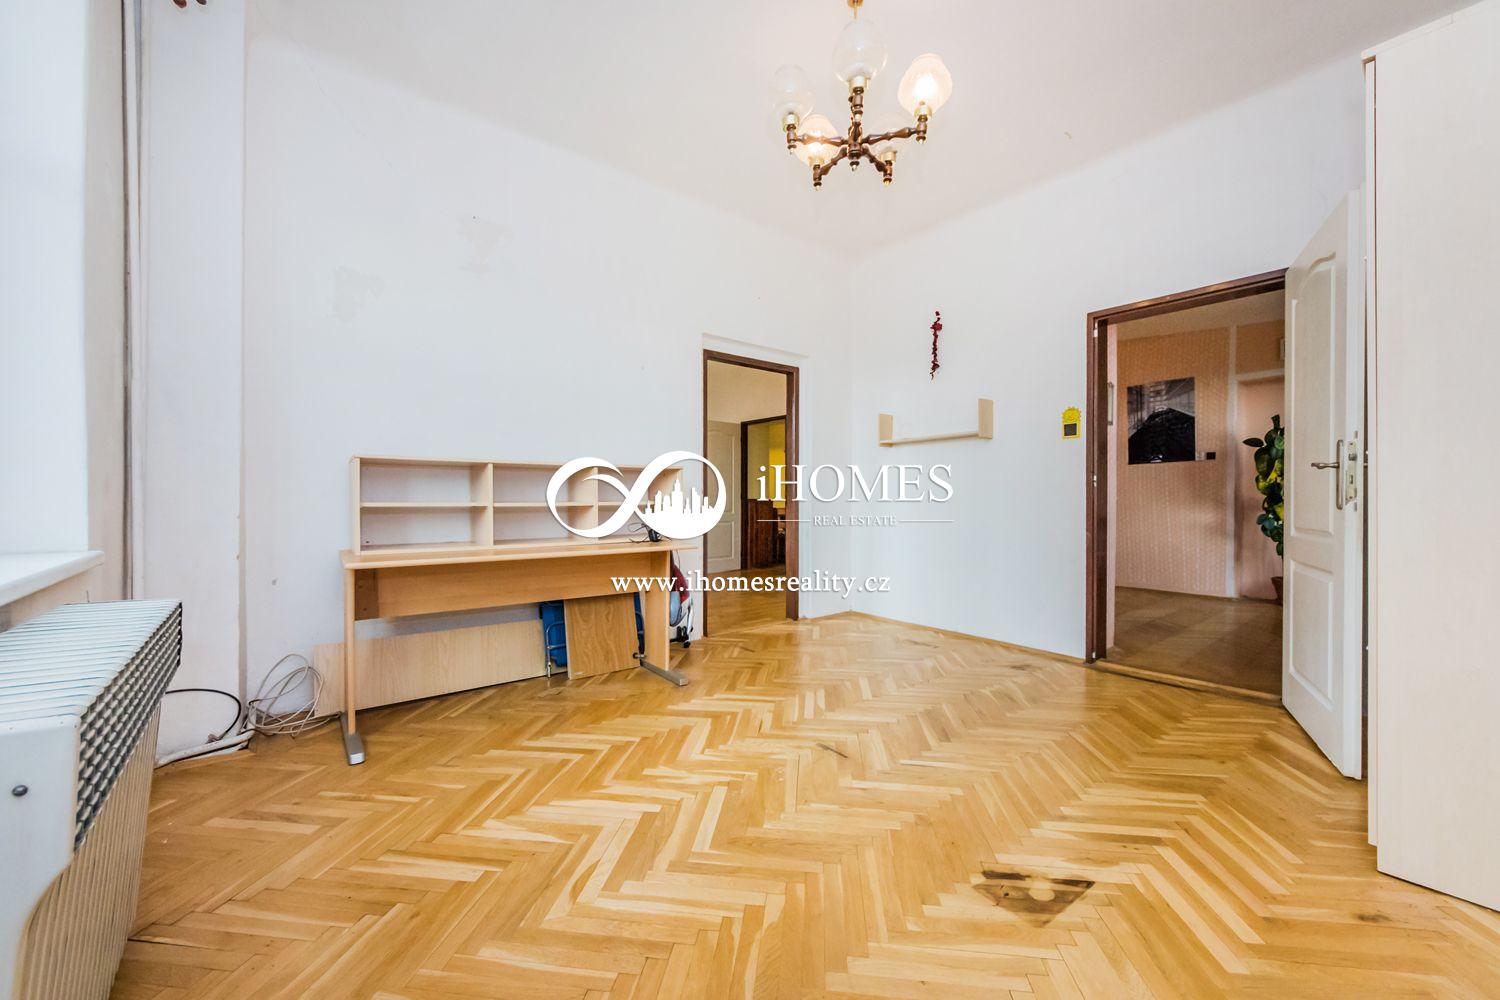 Na prodej ČD 19 bytu a kancelař 1400m2 bytové plochy pozemek 600 m2 Praha 7 Holešovice.